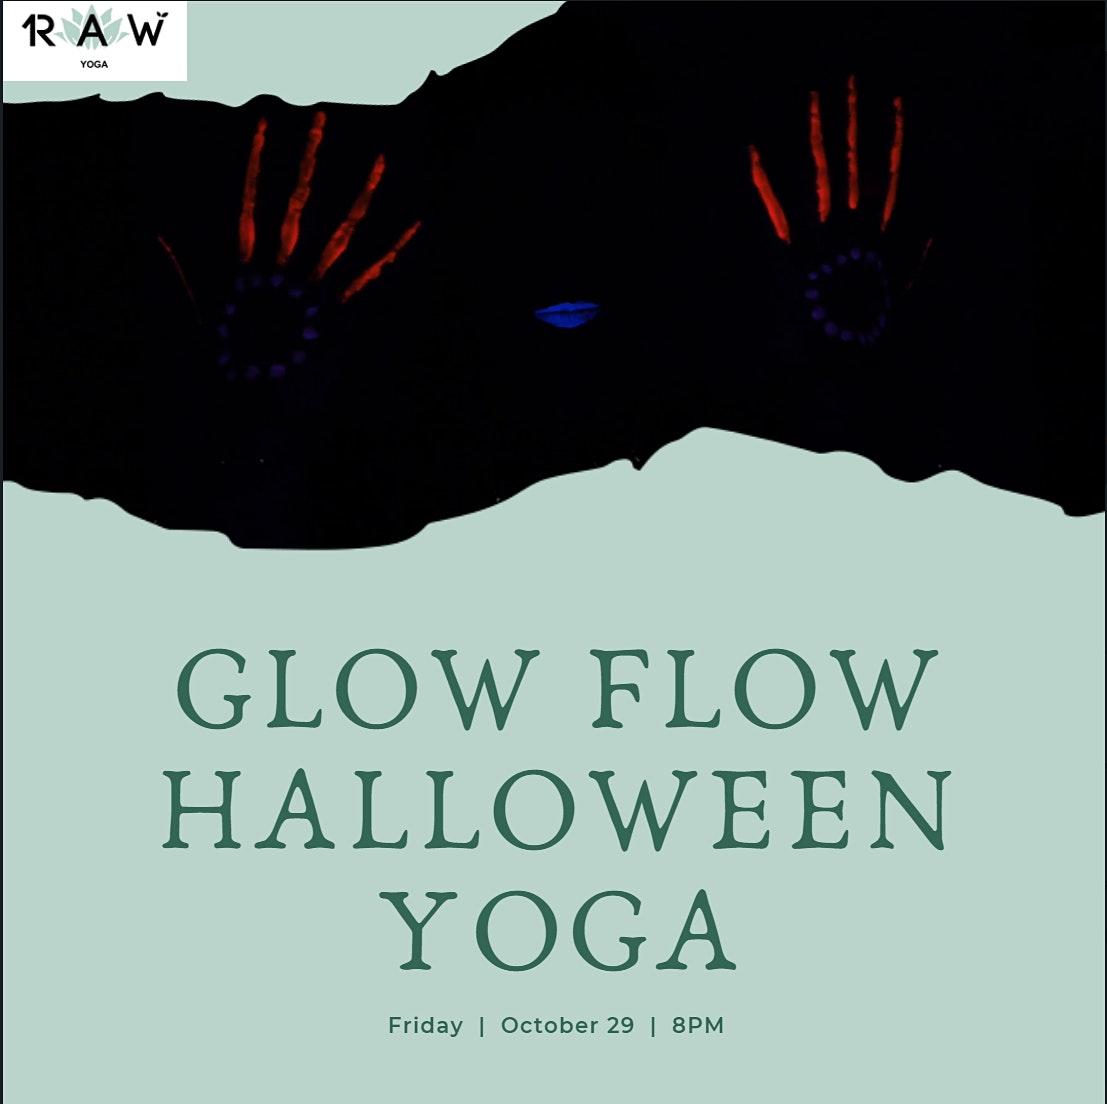 Glow and Flow Halloween Yoga